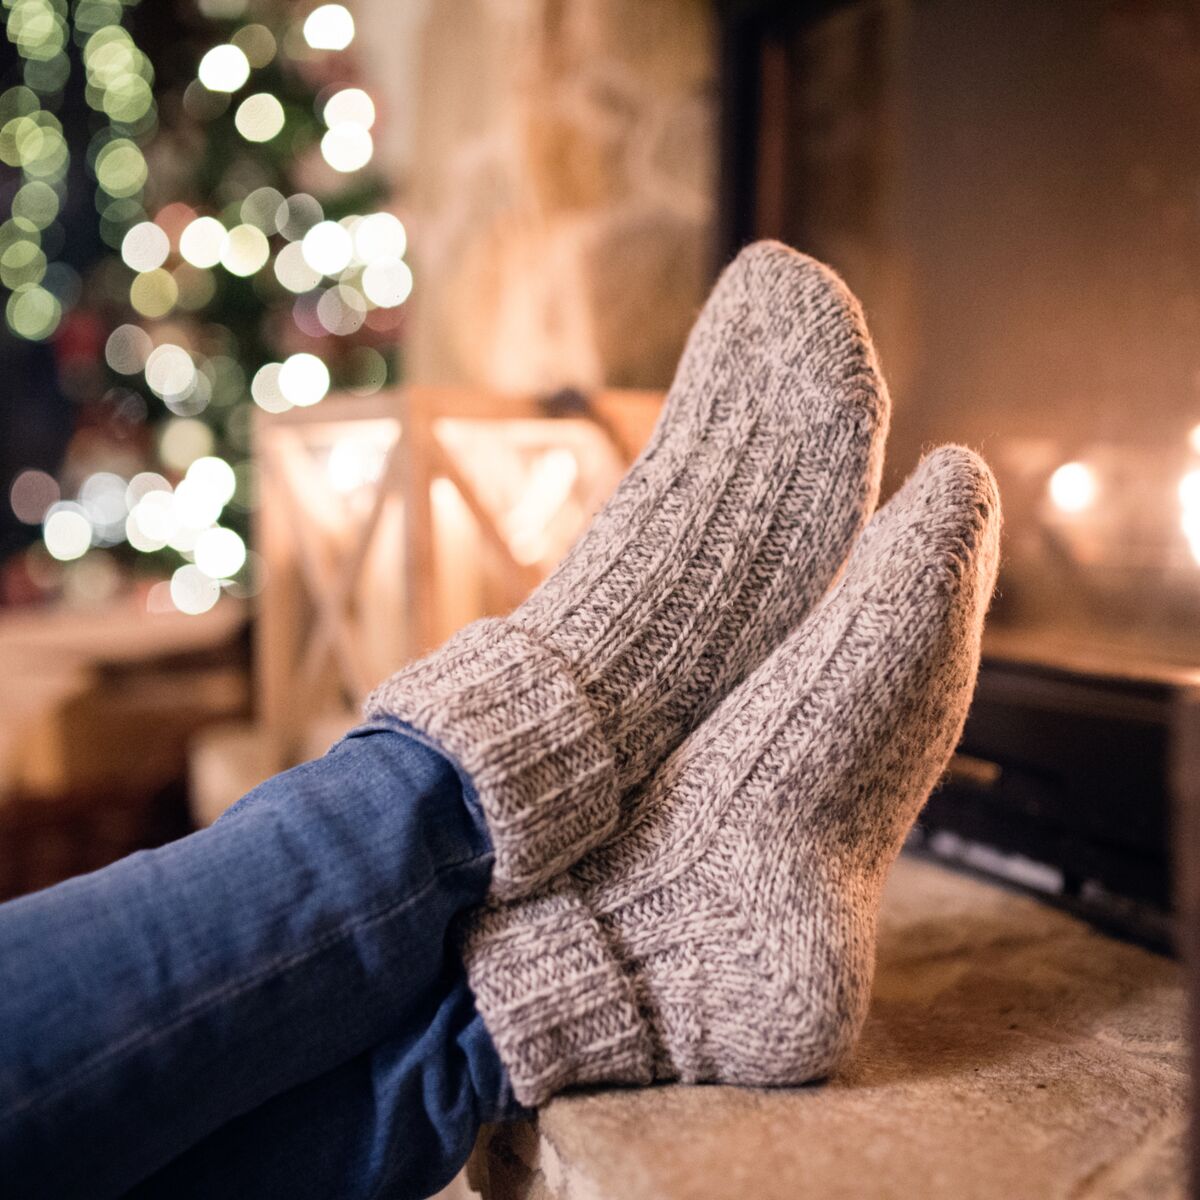 Bien-être, voici quelques astuces pour toujours garder vos pieds chauds en hiver !